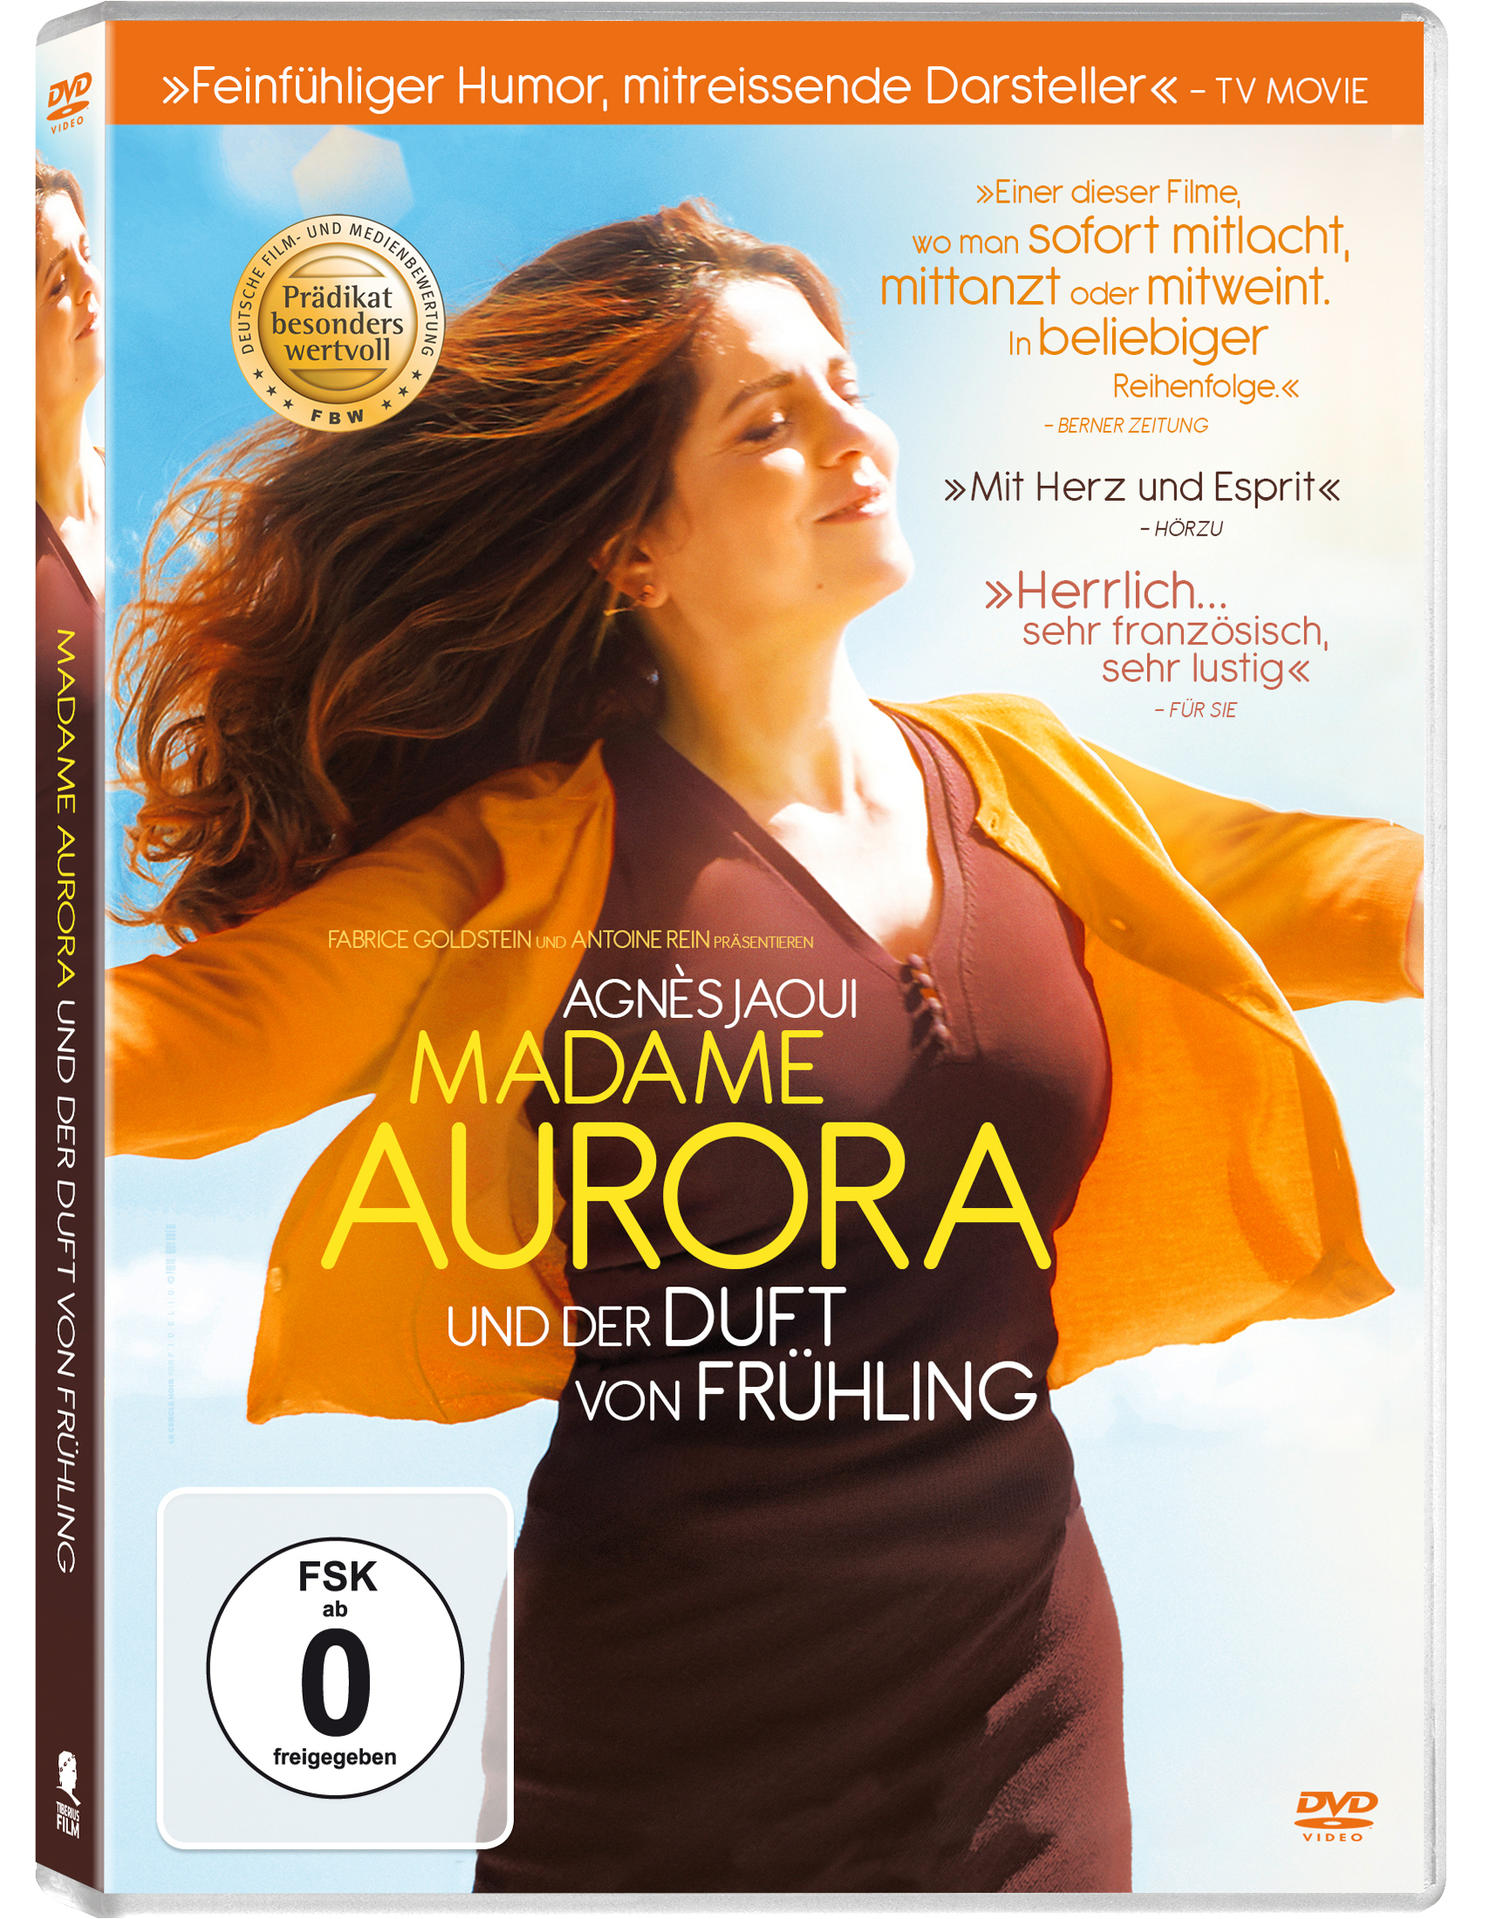 Madame Aurora und Frühling Duft DVD von der